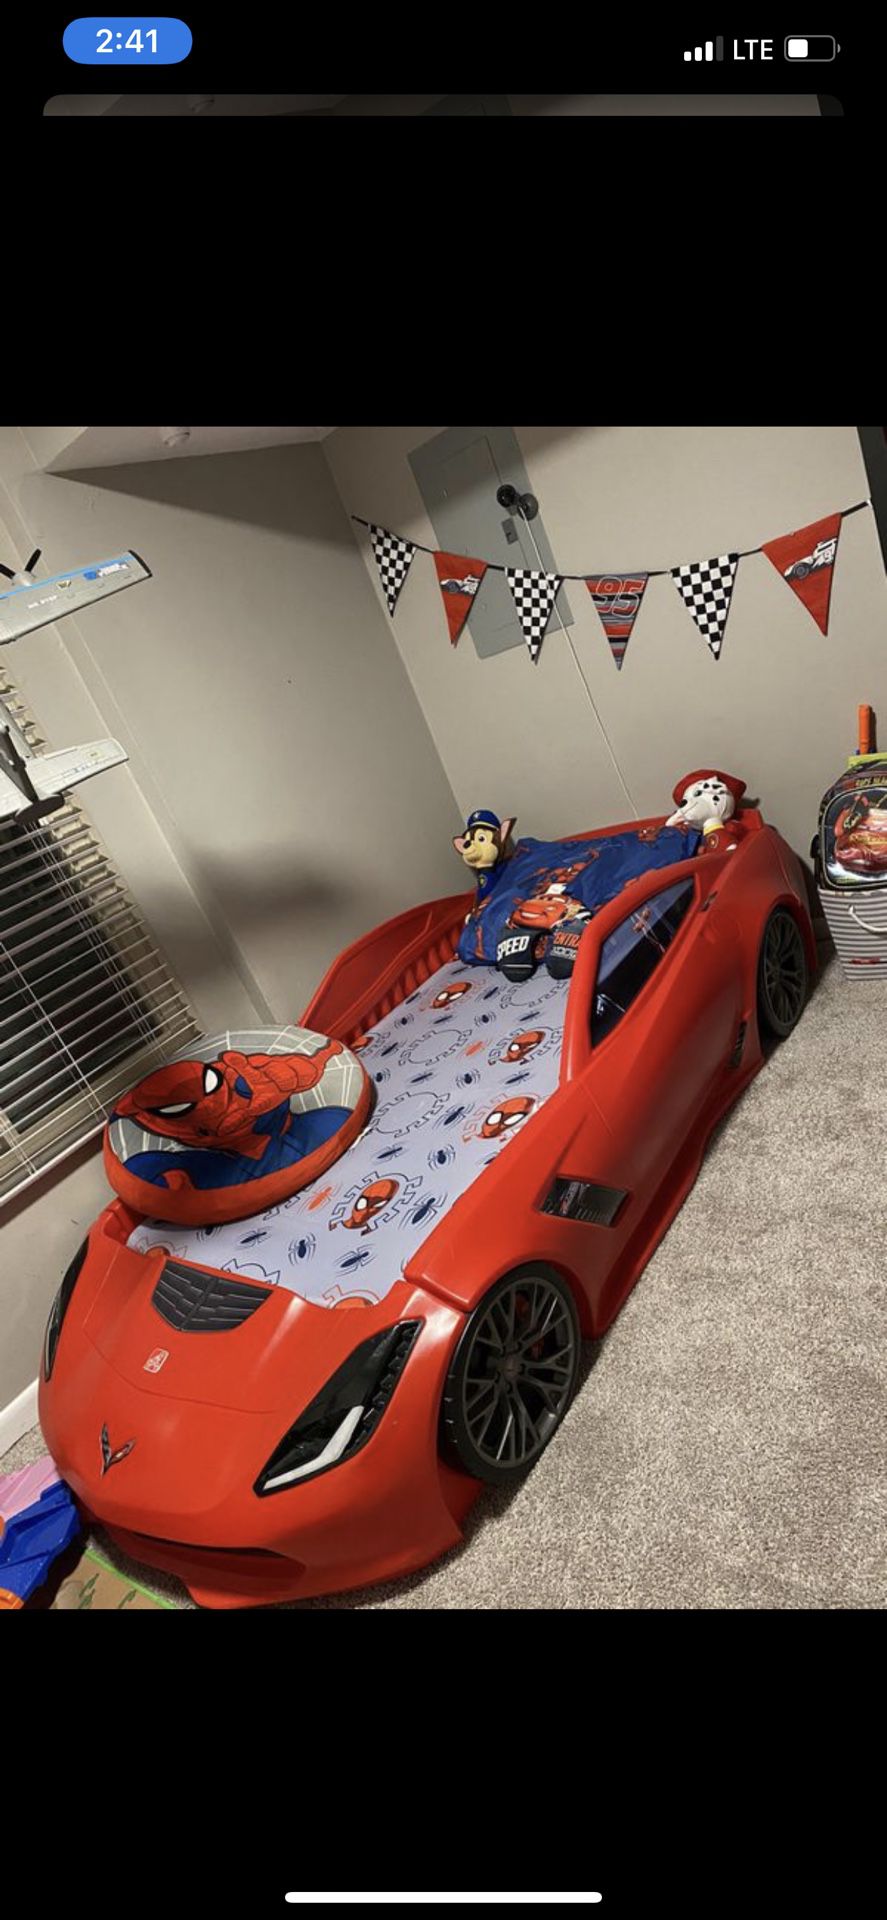 Cama de carro con mueblesito ropa y 4 juegos de cama uno de paw patrol, Spider-Man, pj mask y cars